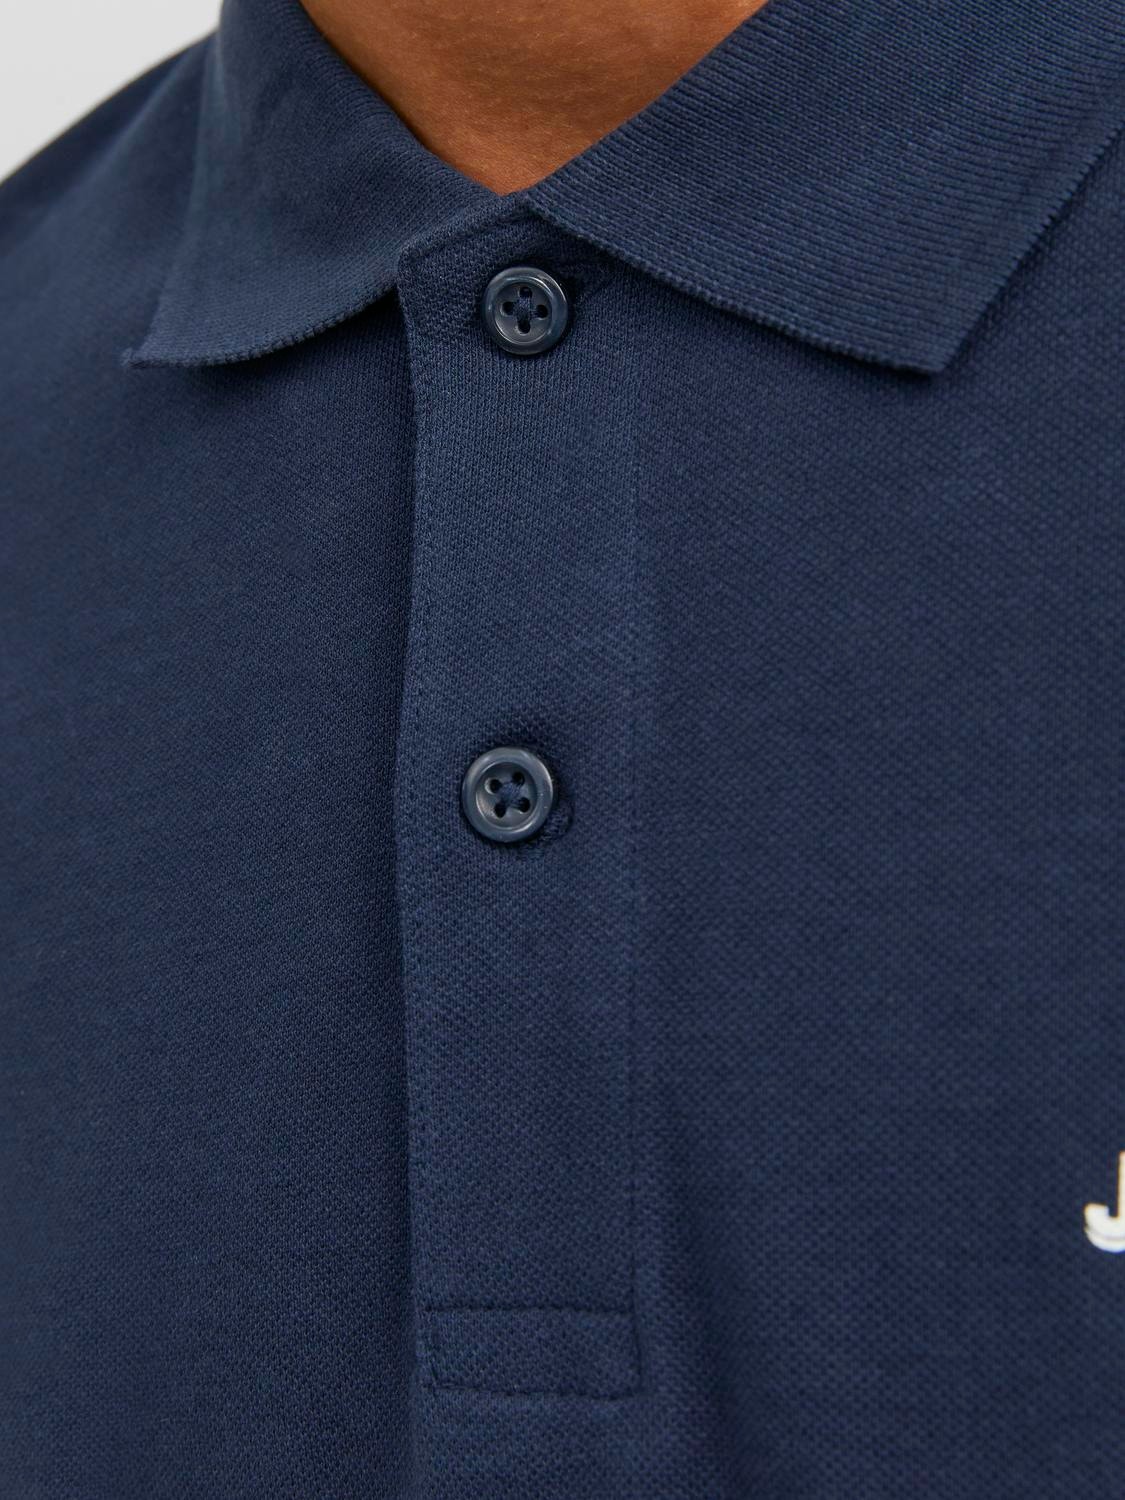 Jack & Jones Logo Shirt collar T-shirt -Navy Blazer - 12238848